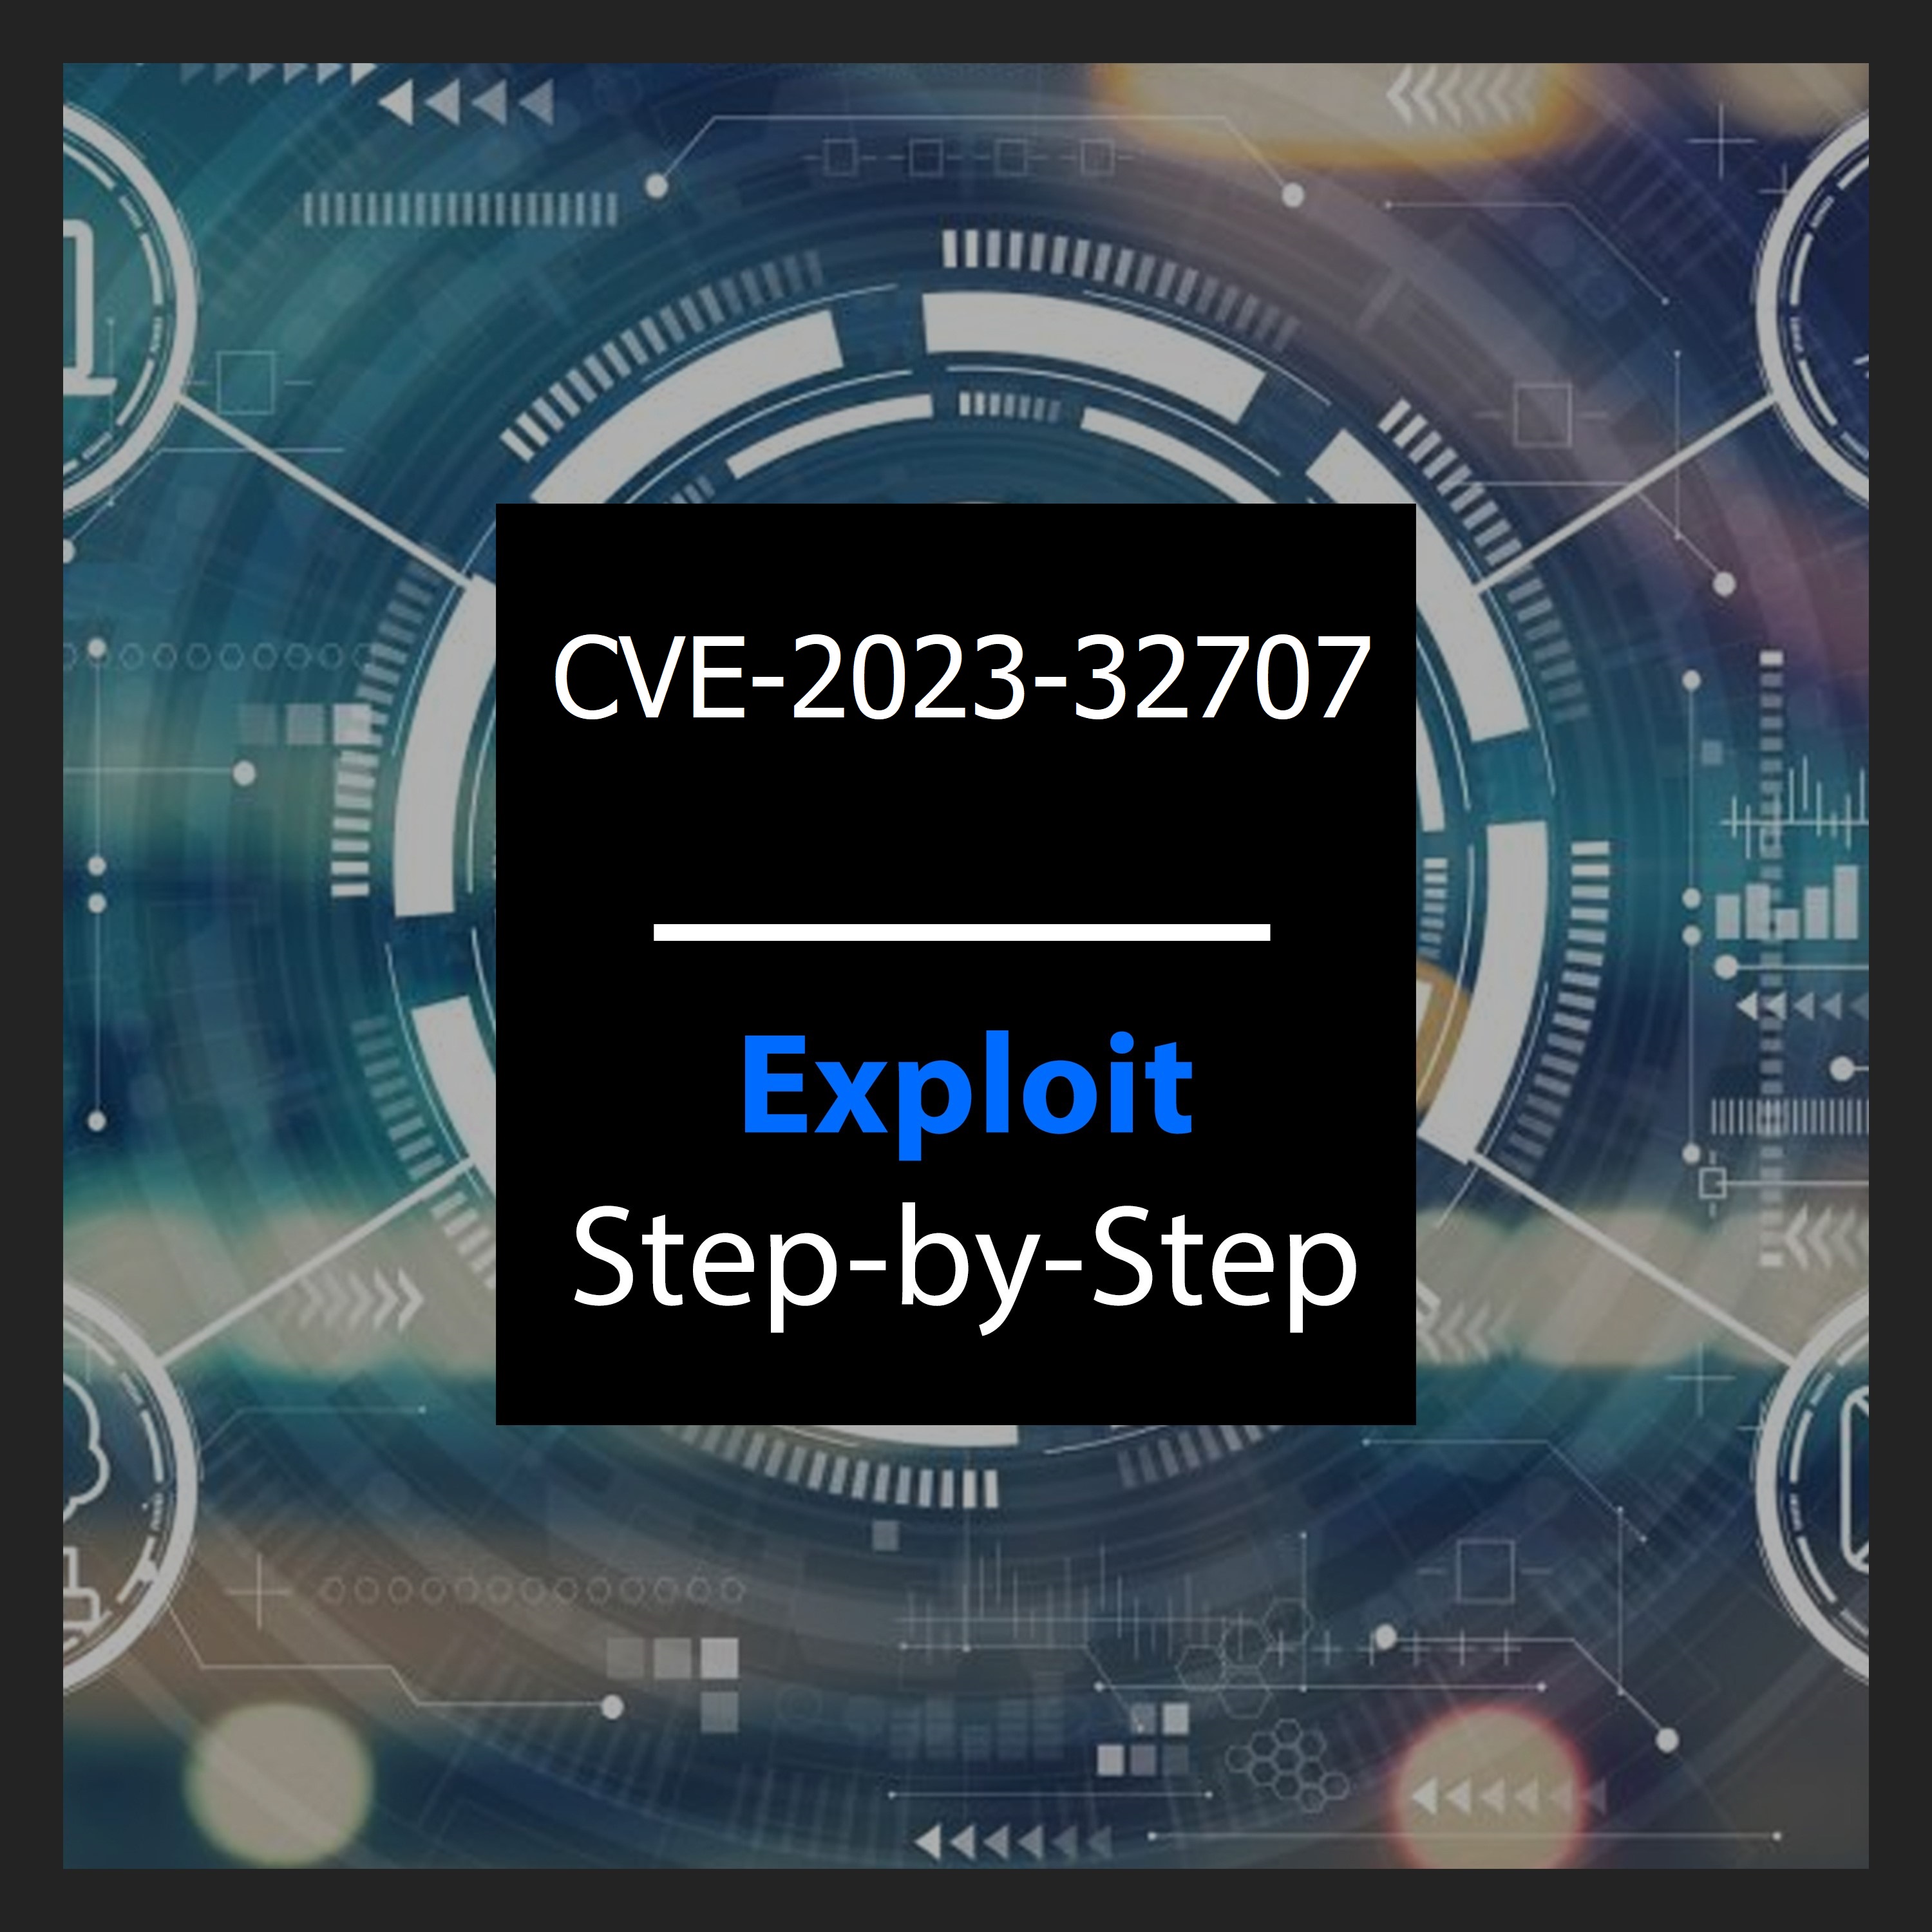 CVE-2023-32707: A Dive into Splunk Vulnerability